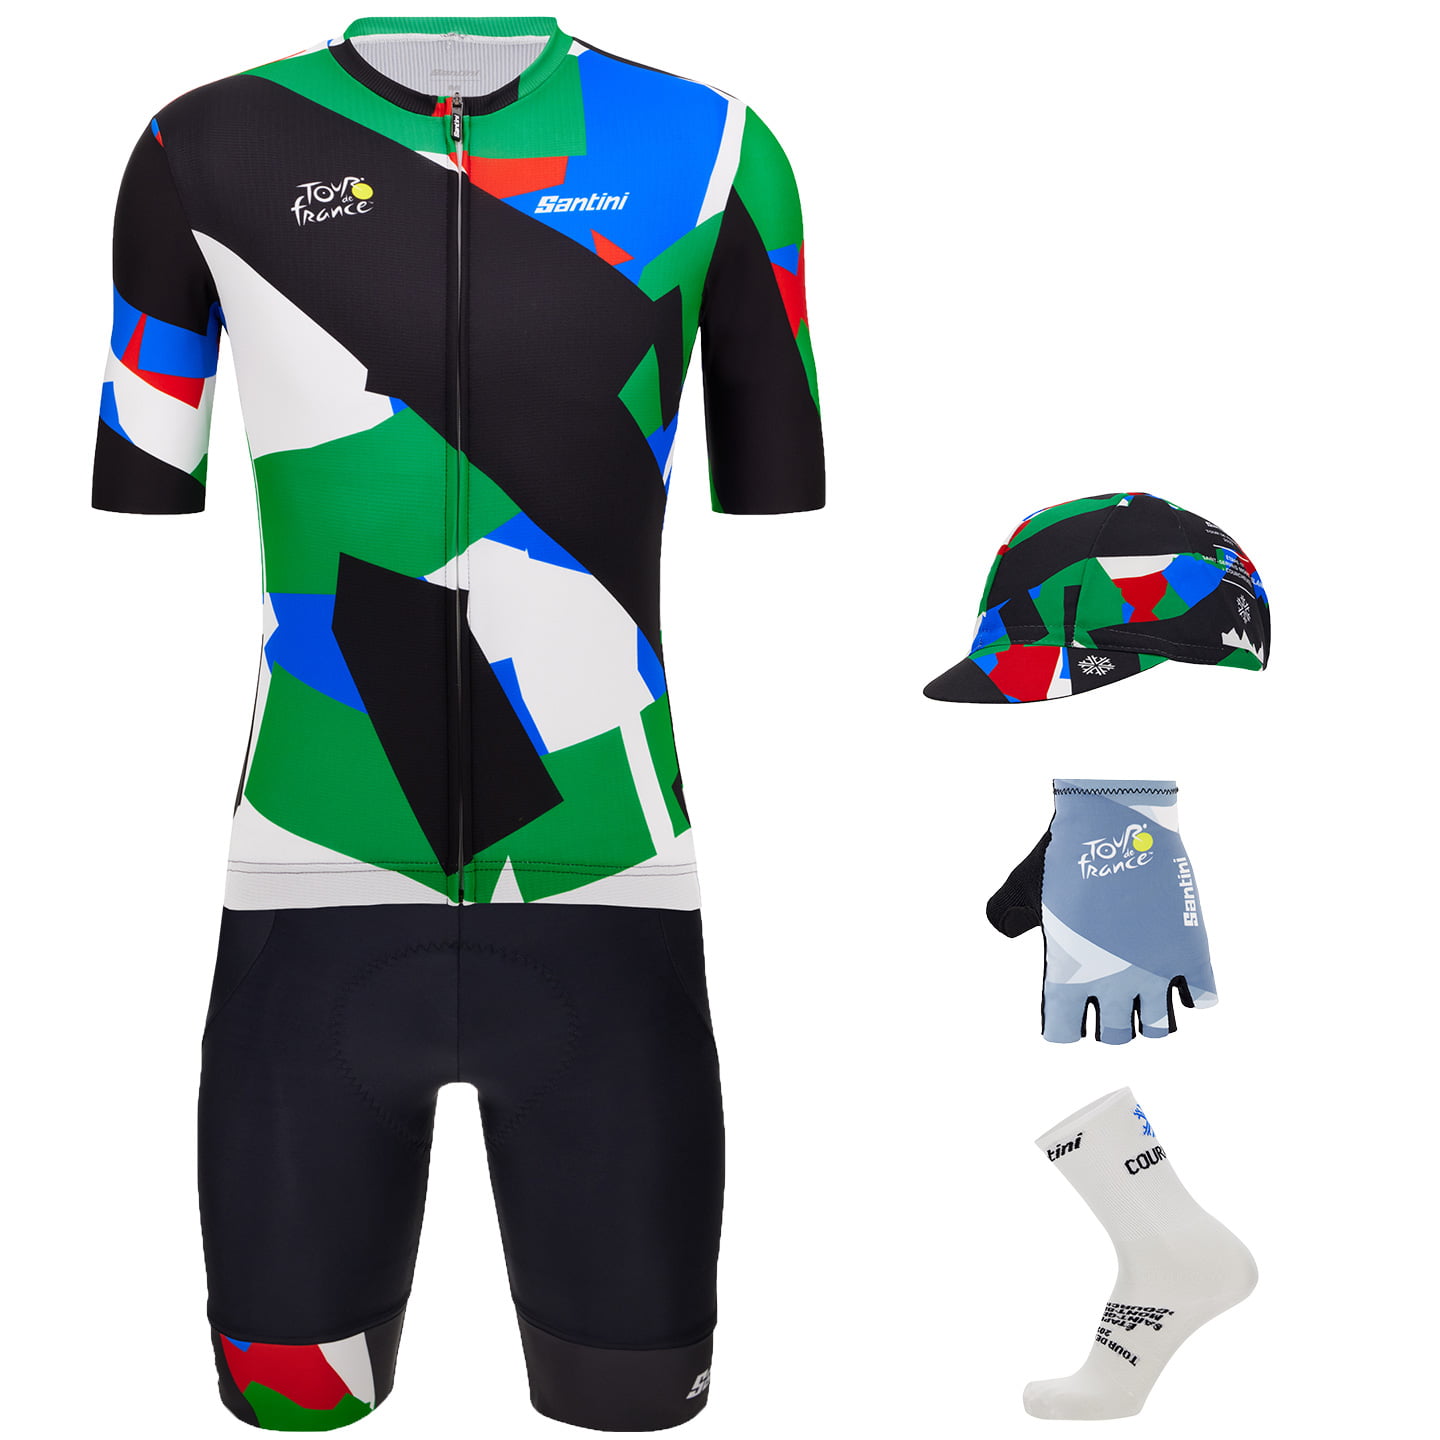 TOUR DE FRANCE Mont Blanc-Courchevel 2023 Maxi-Set (5 pieces), for men, Cycling clothing